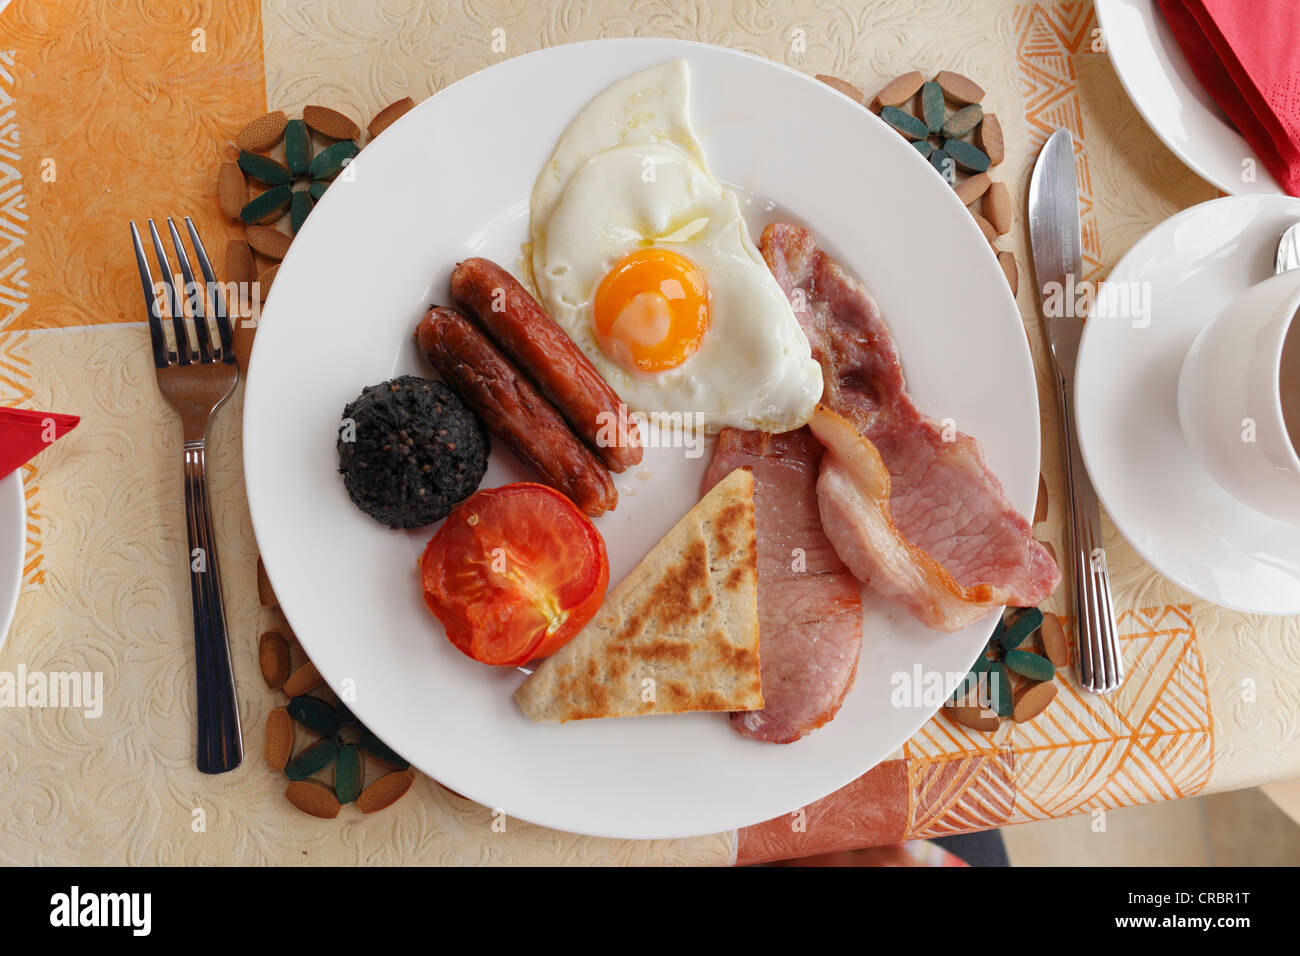 Un petit-déjeuner irlandais, Dunfanaghy, comté de Donegal, Irlande, Europe Banque D'Images